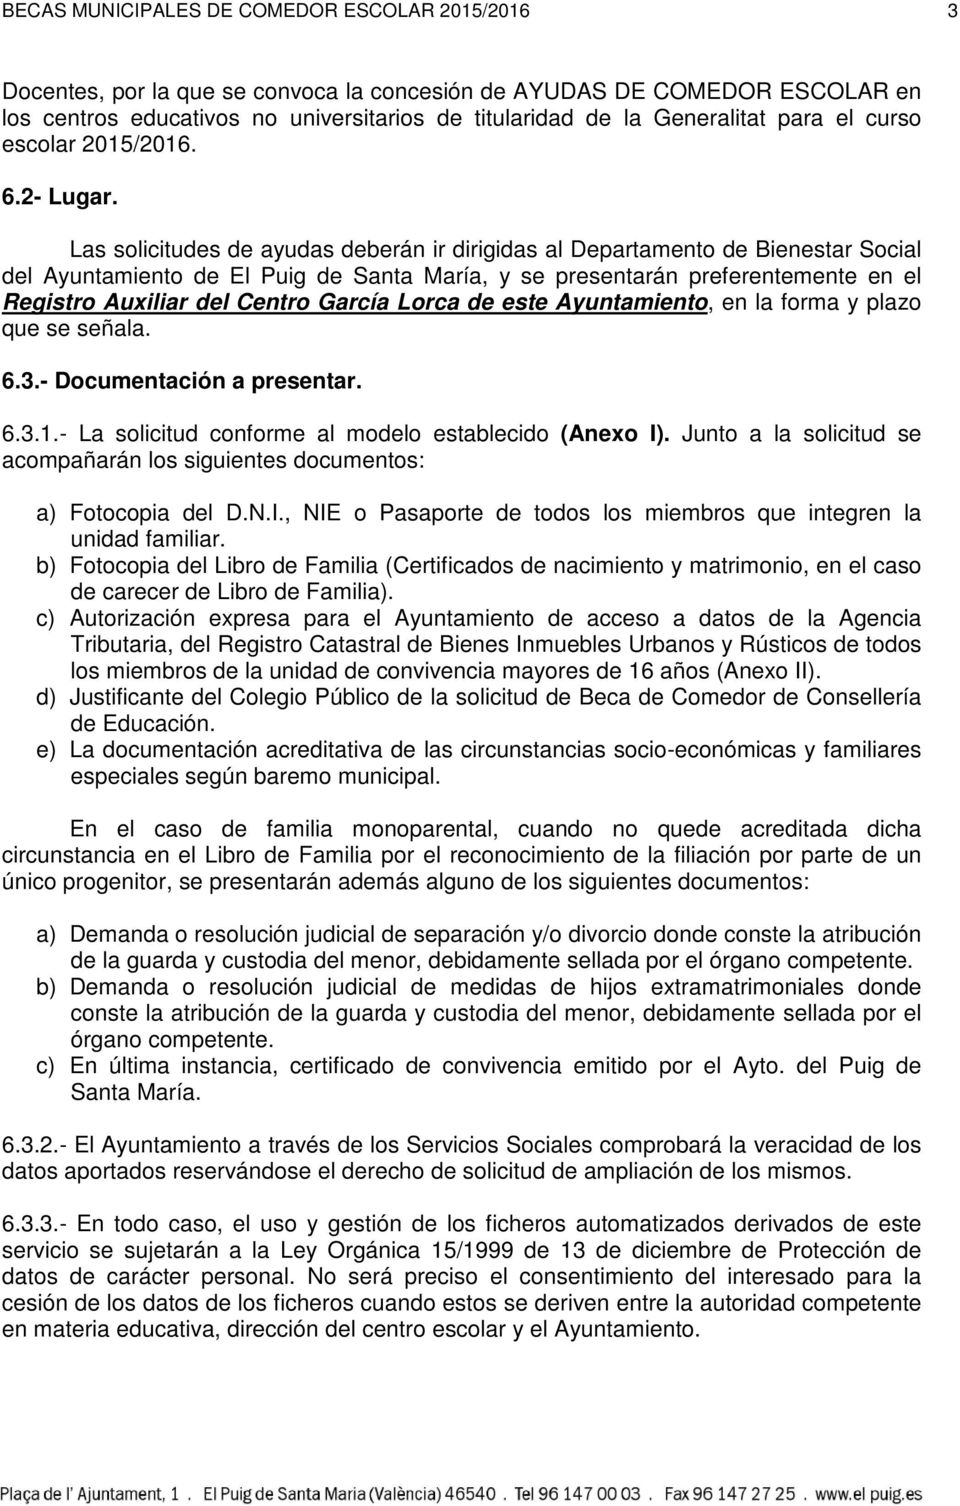 Las solicitudes de ayudas deberán ir dirigidas al Departamento de Bienestar Social del Ayuntamiento de El Puig de Santa María, y se presentarán preferentemente en el Registro Auxiliar del Centro